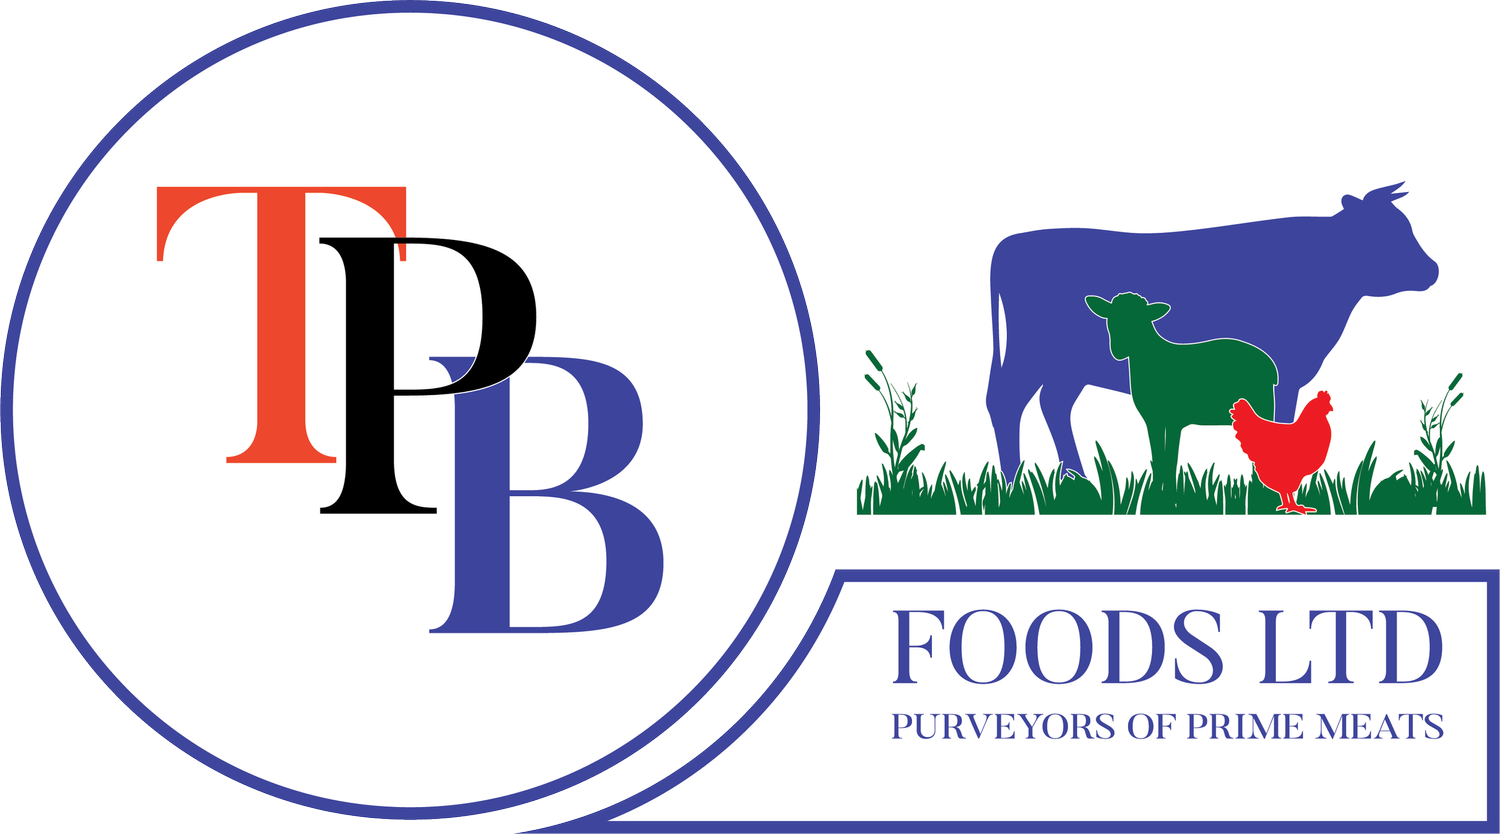 TPB Foods Ltd